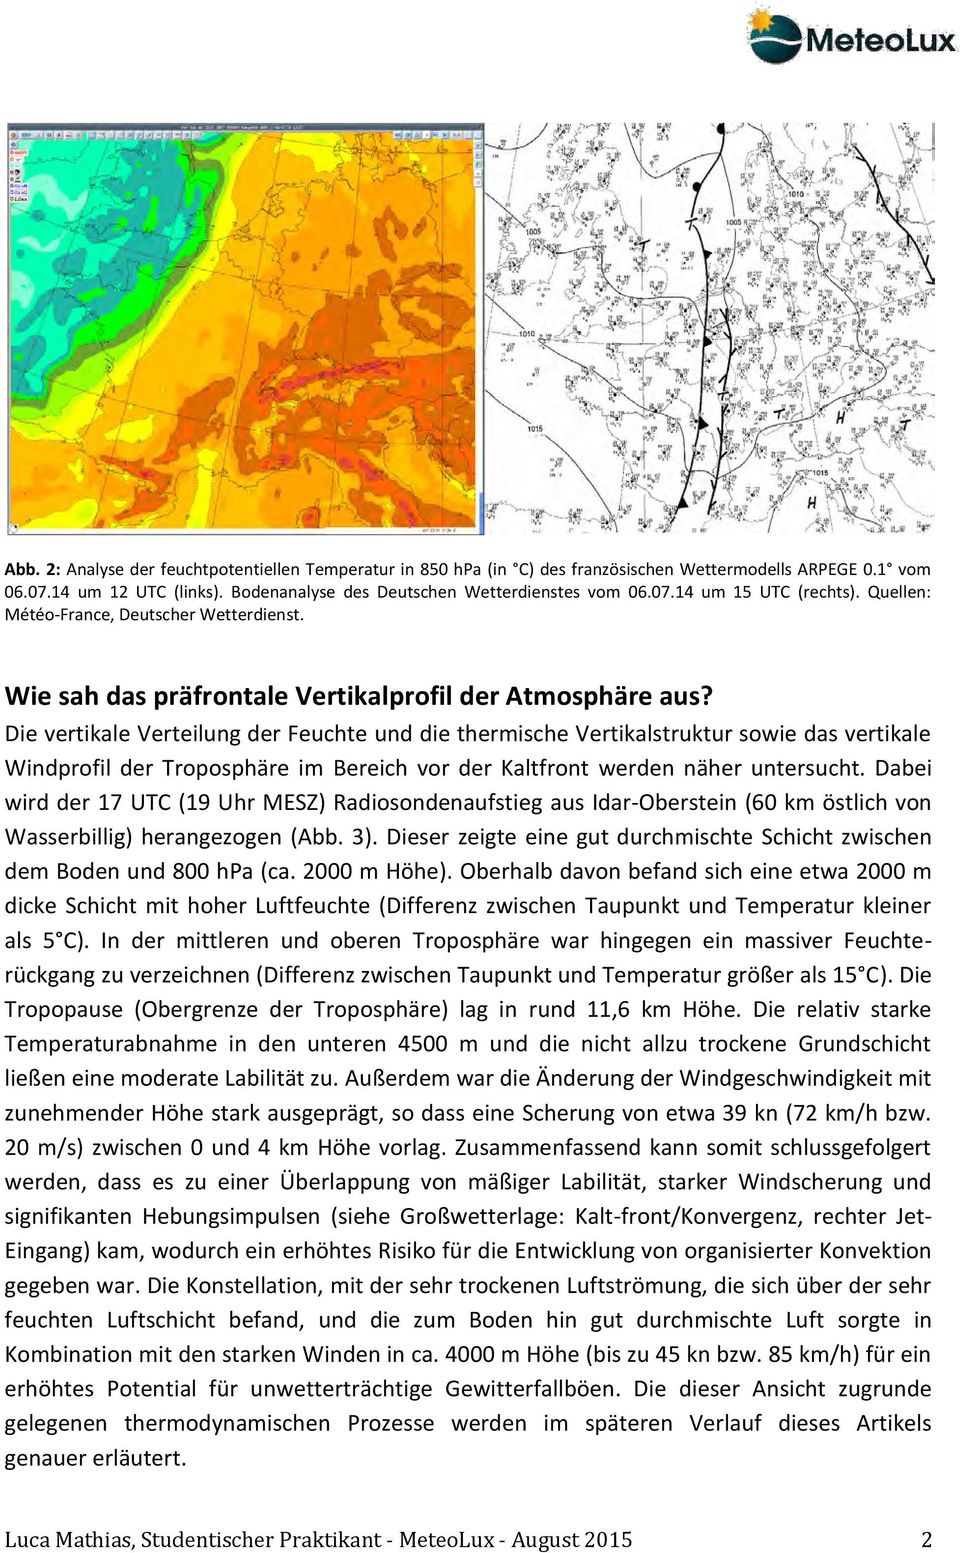 Die vertikale Verteilung der Feuchte und die thermische Vertikalstruktur sowie das vertikale Windprofil der Troposphäre im Bereich vor der Kaltfront werden näher untersucht.